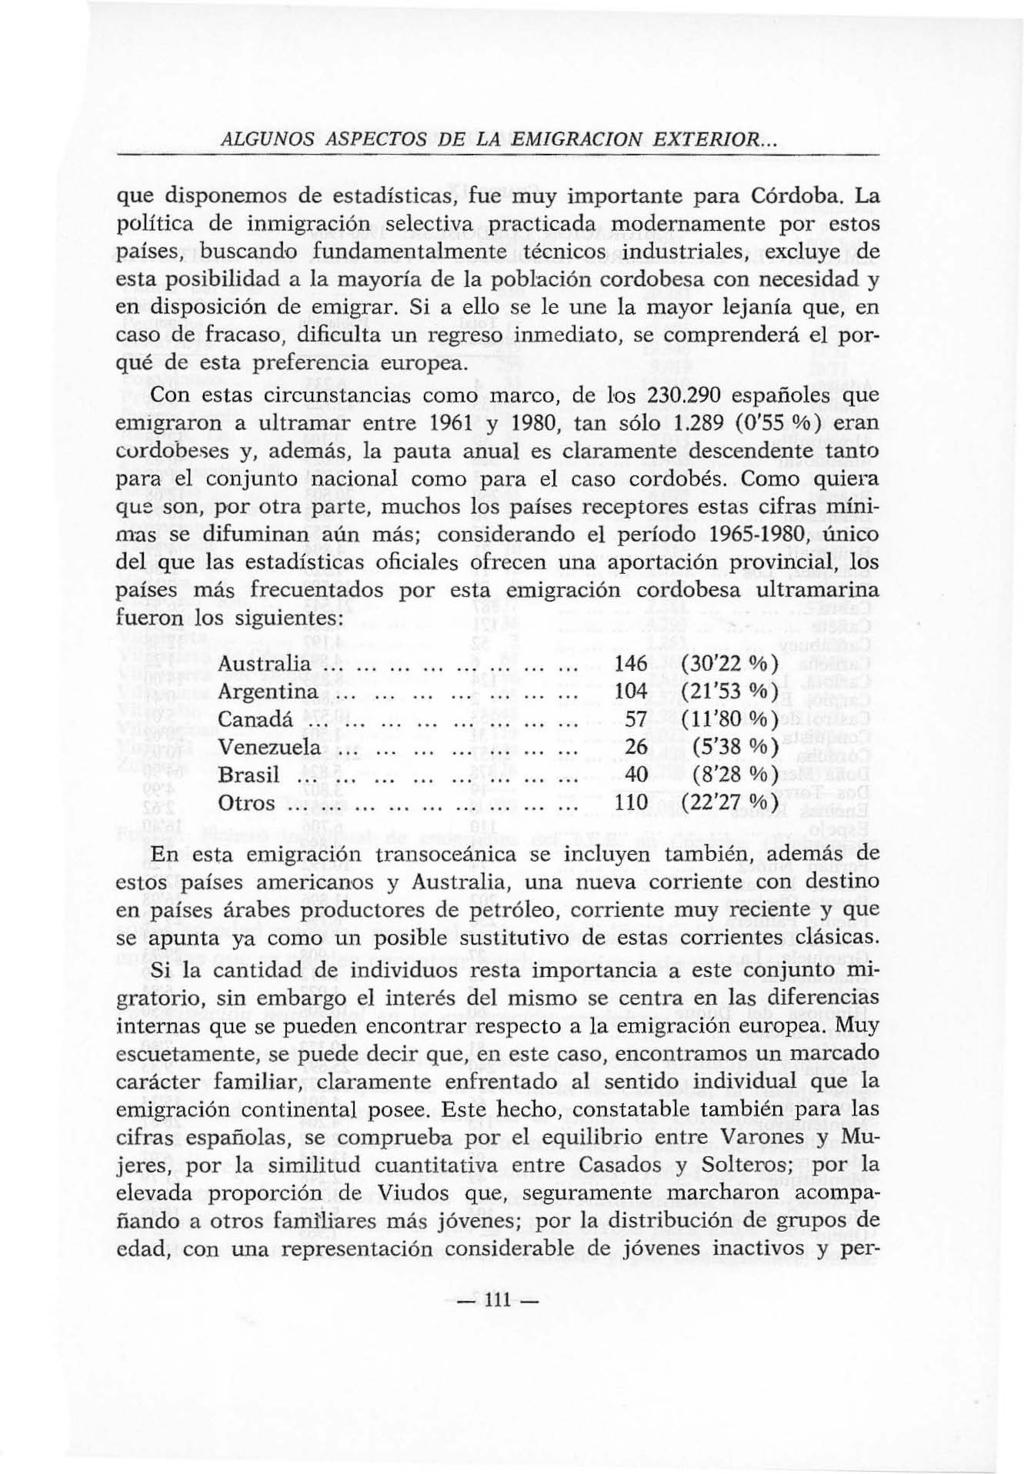 ALGUNOS ASPECTOS DE LA EMIGRACION EXTERIOR... que disponemos de estadísticas, fue muy importante para Córdoba.